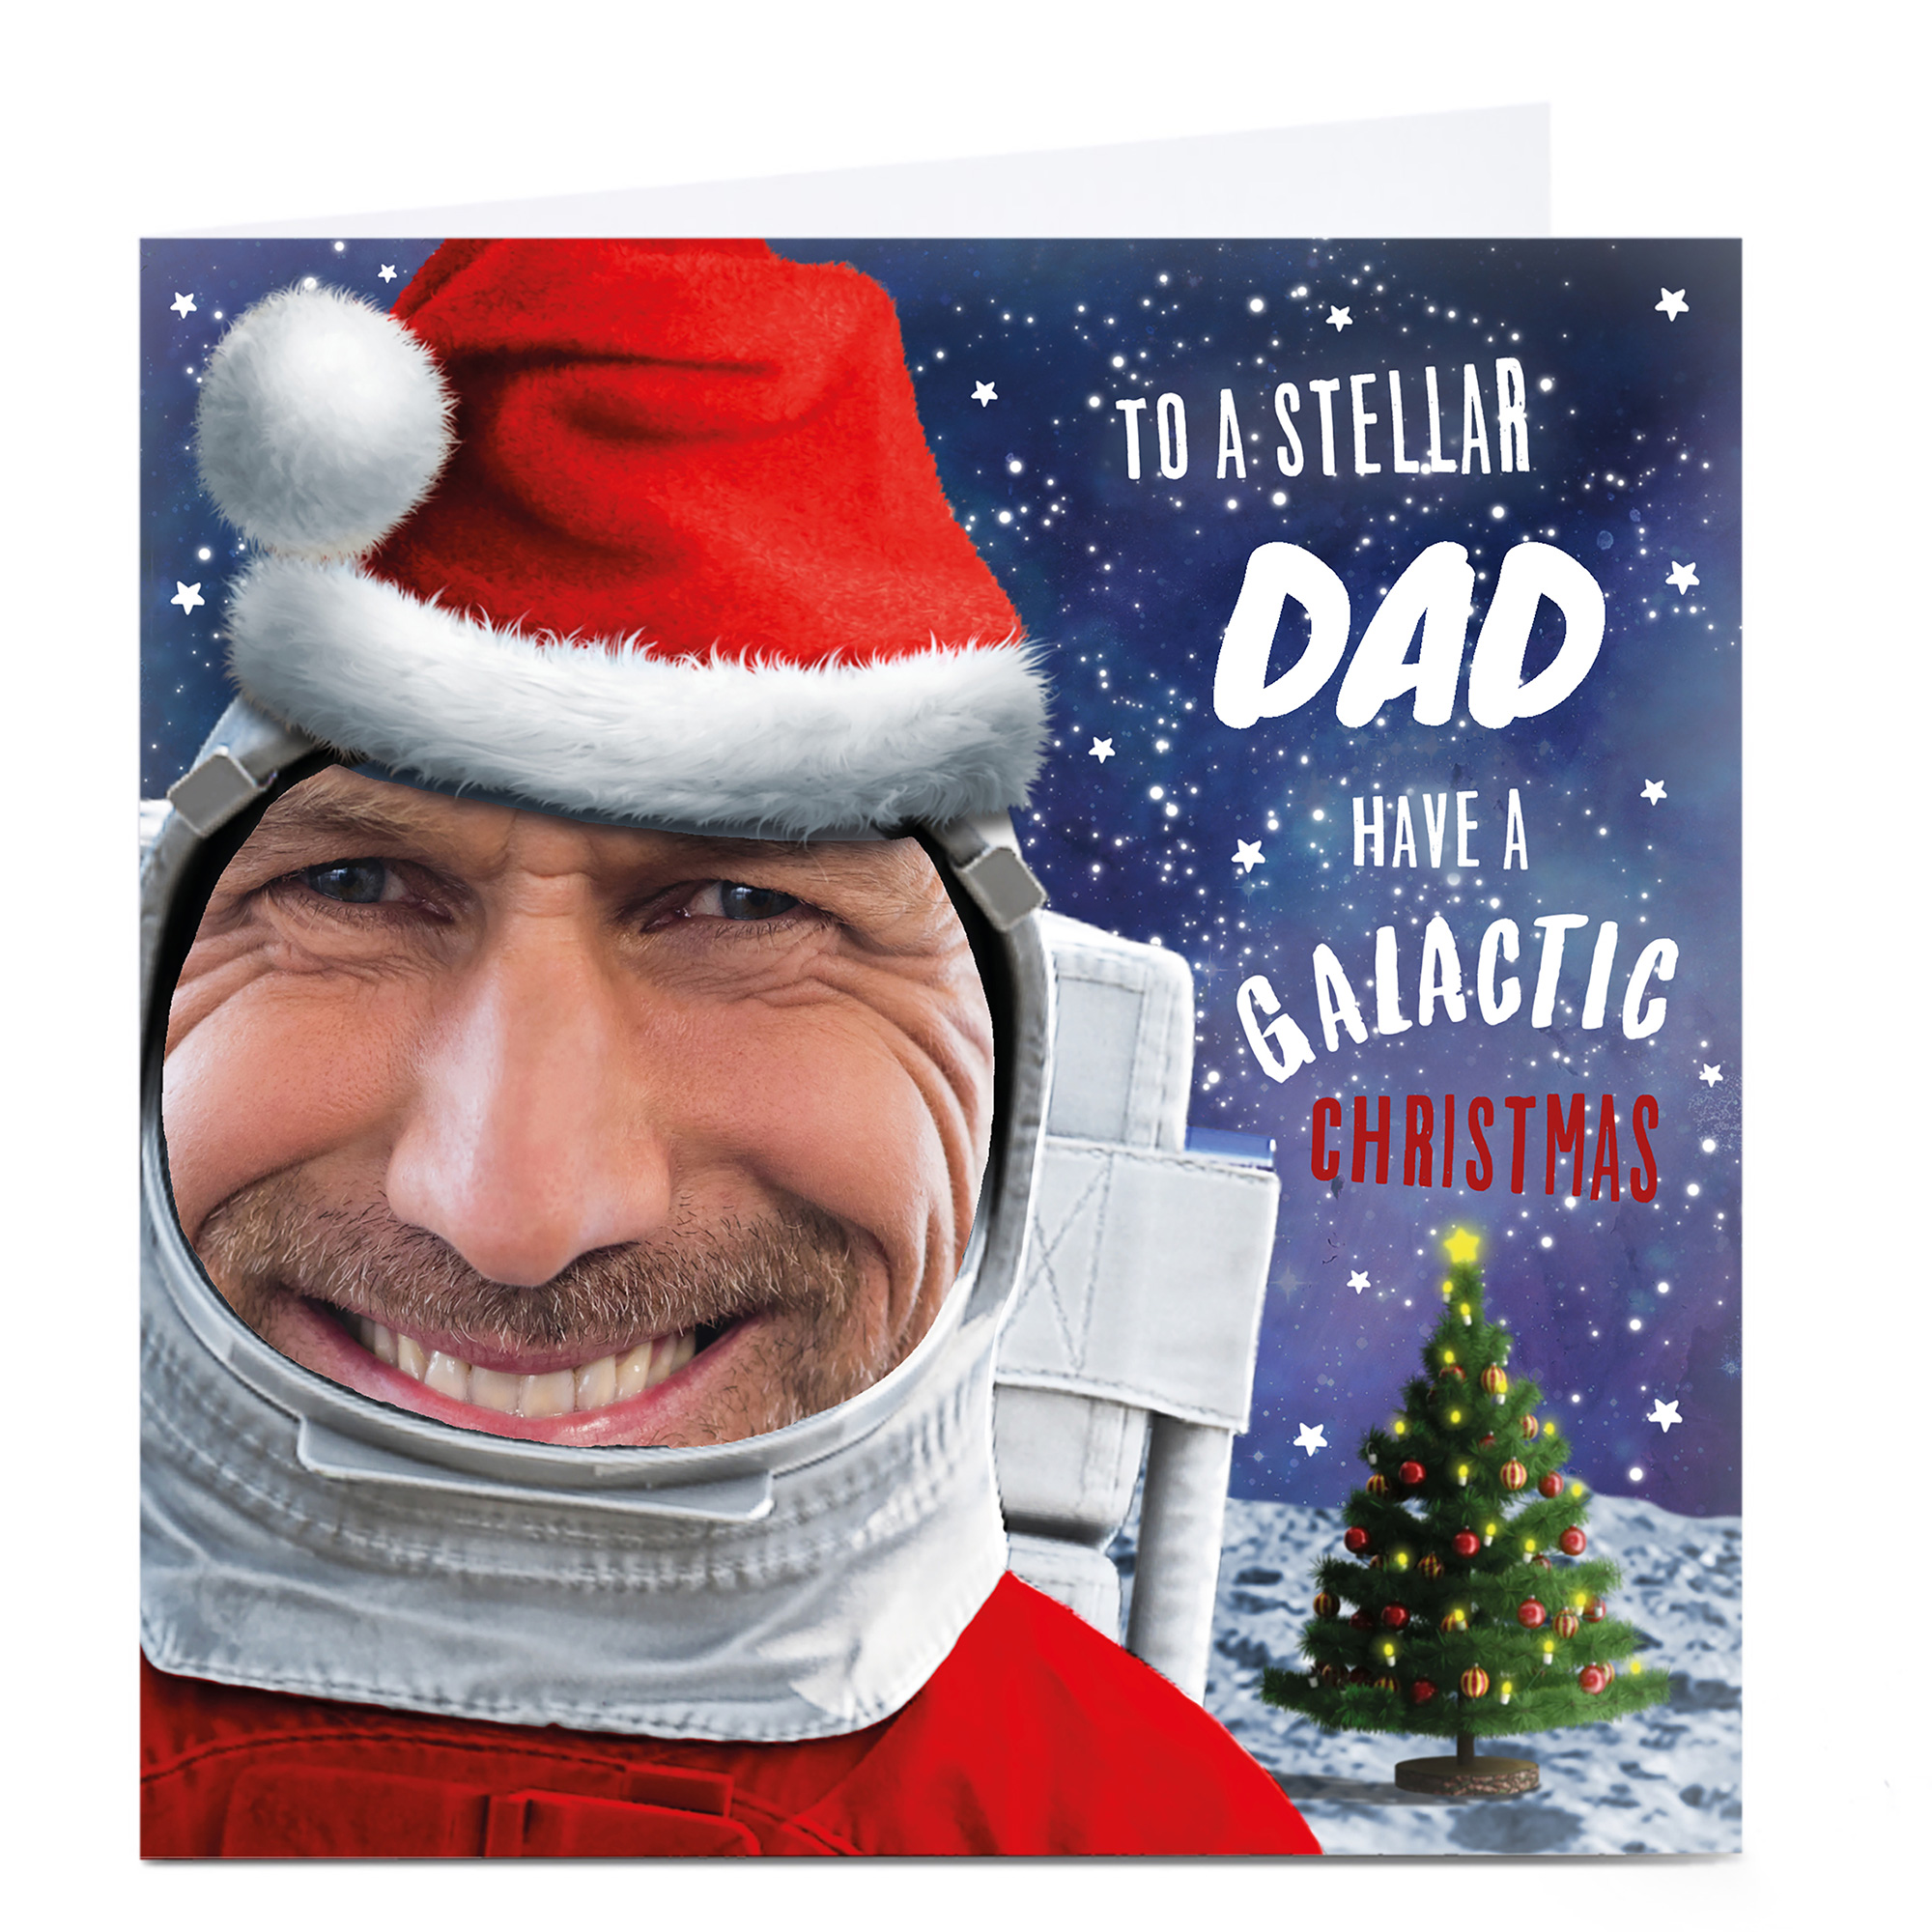 Photo Christmas Card - Galactic Christmas, Dad